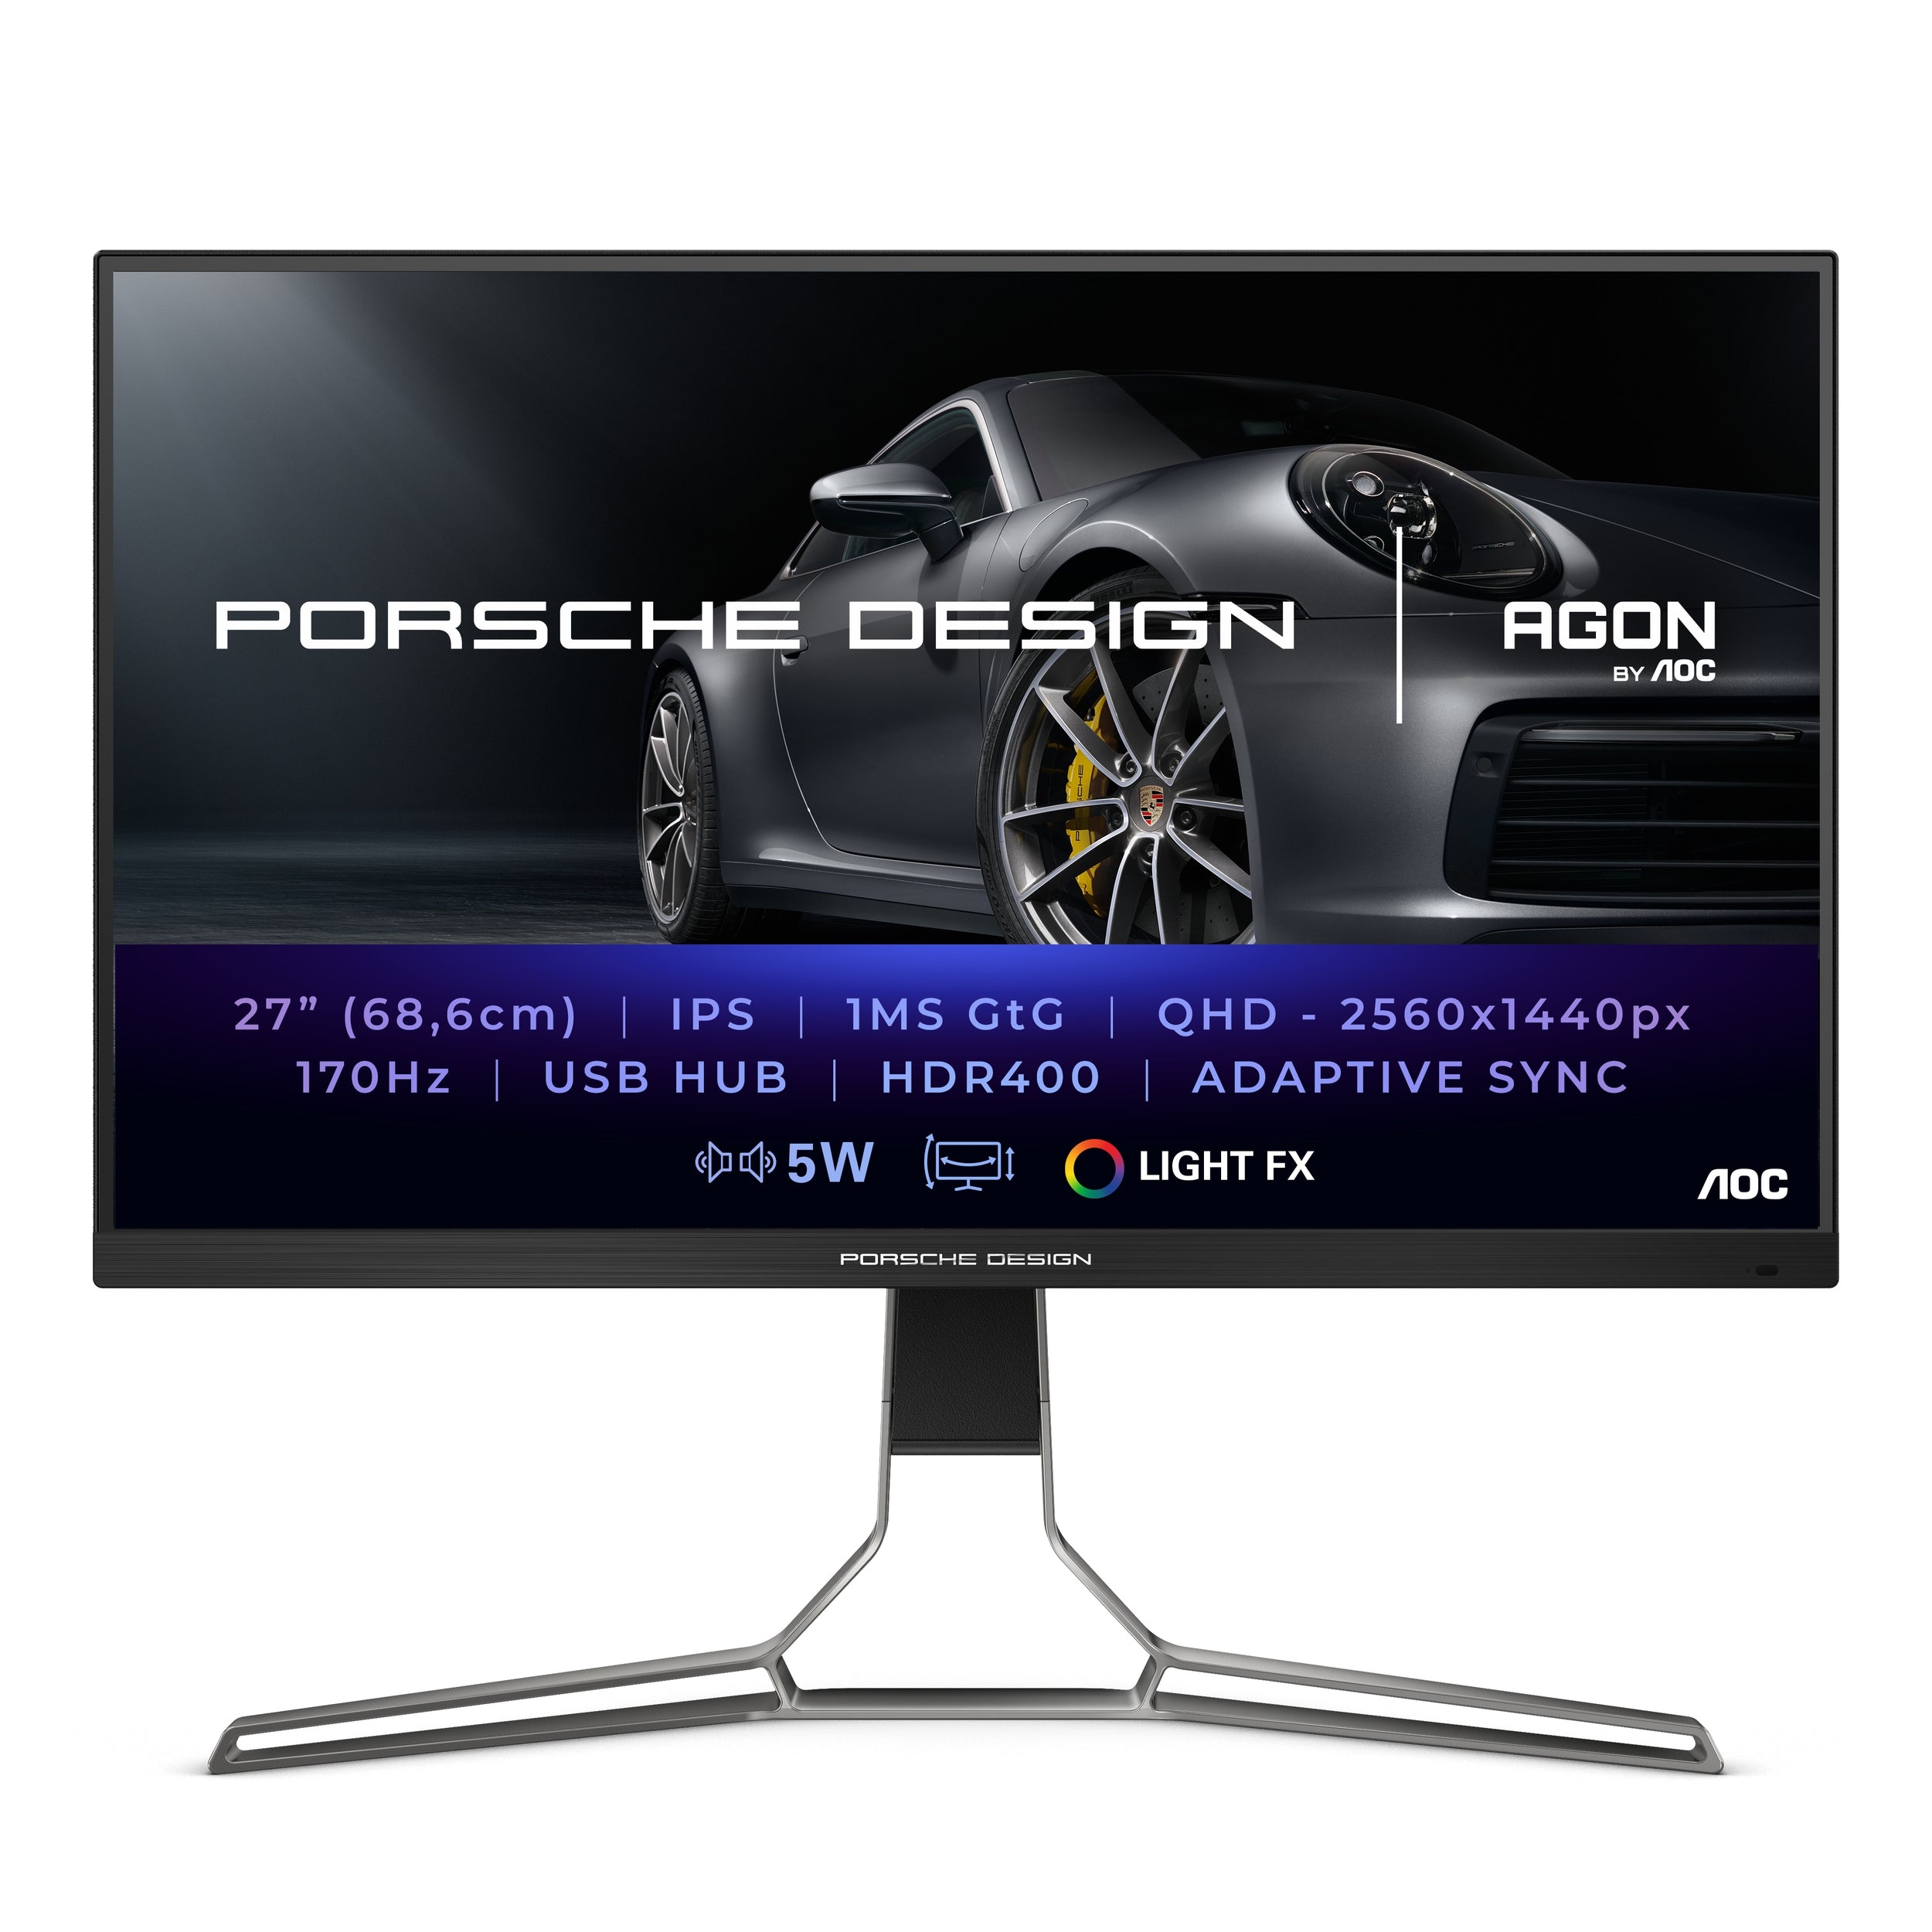 Monitor Aoc Porsche Pd27S / Panel Ips  27 / Frecuencia 170 Hz / Tiempo De Respuesta 1 Ms / Amd Free Sync / Color Negro / Hdmi / Displayport / Aspecto 16:9 / Resolucion 2560 X 1440 / Brillo 350 Cd/M2